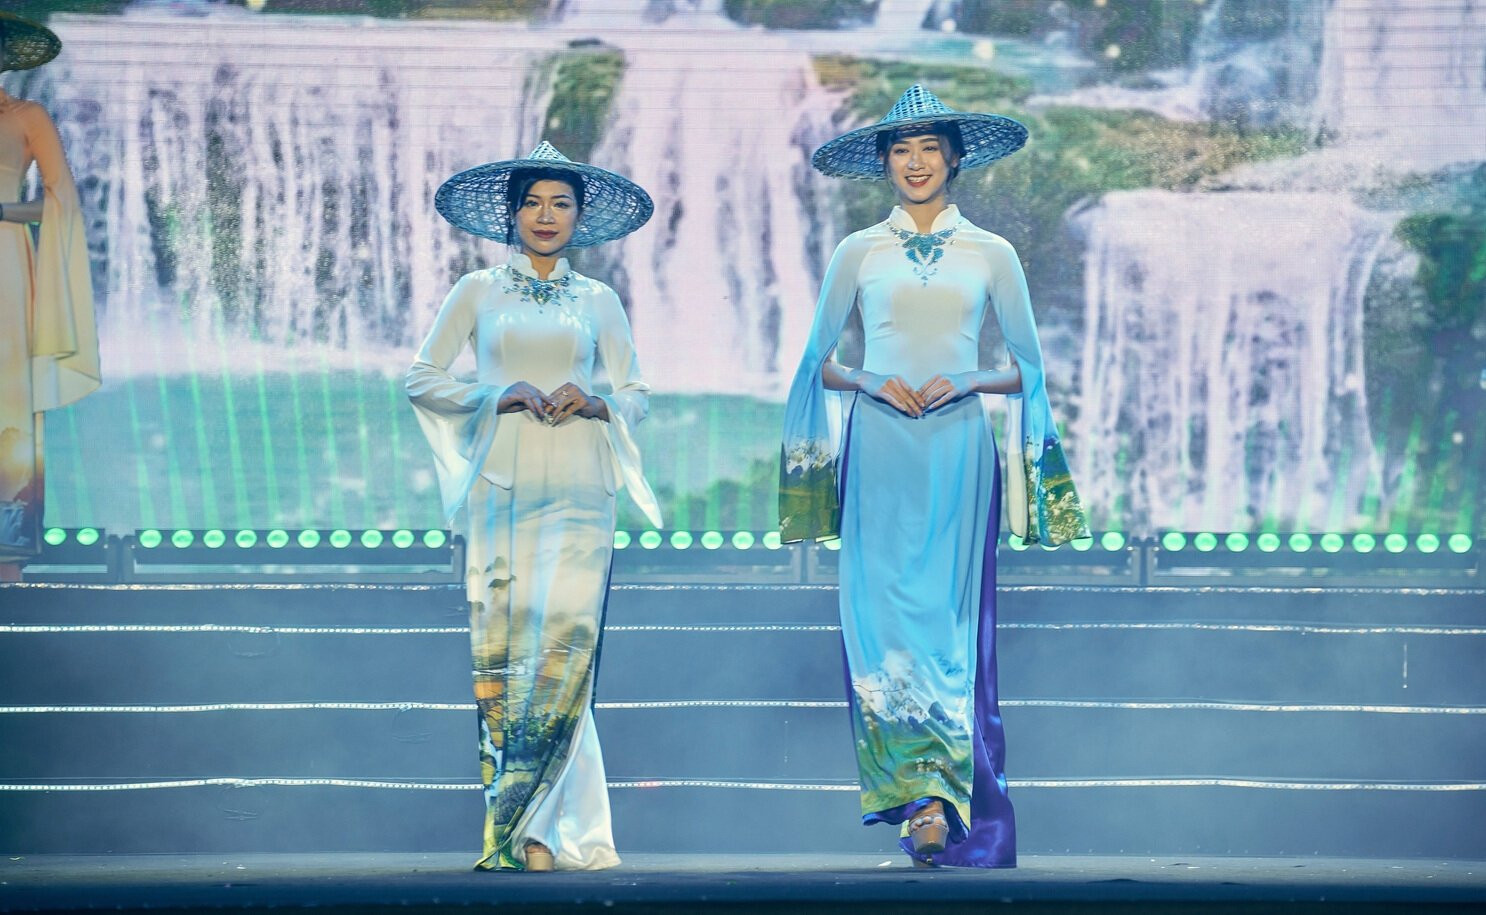 Phần trình diễn áo dài trên nền điệu hát Lượn “Đợi nàng” do NSND Nông Xuân Ái đặt lời Tày và biểu diễn.